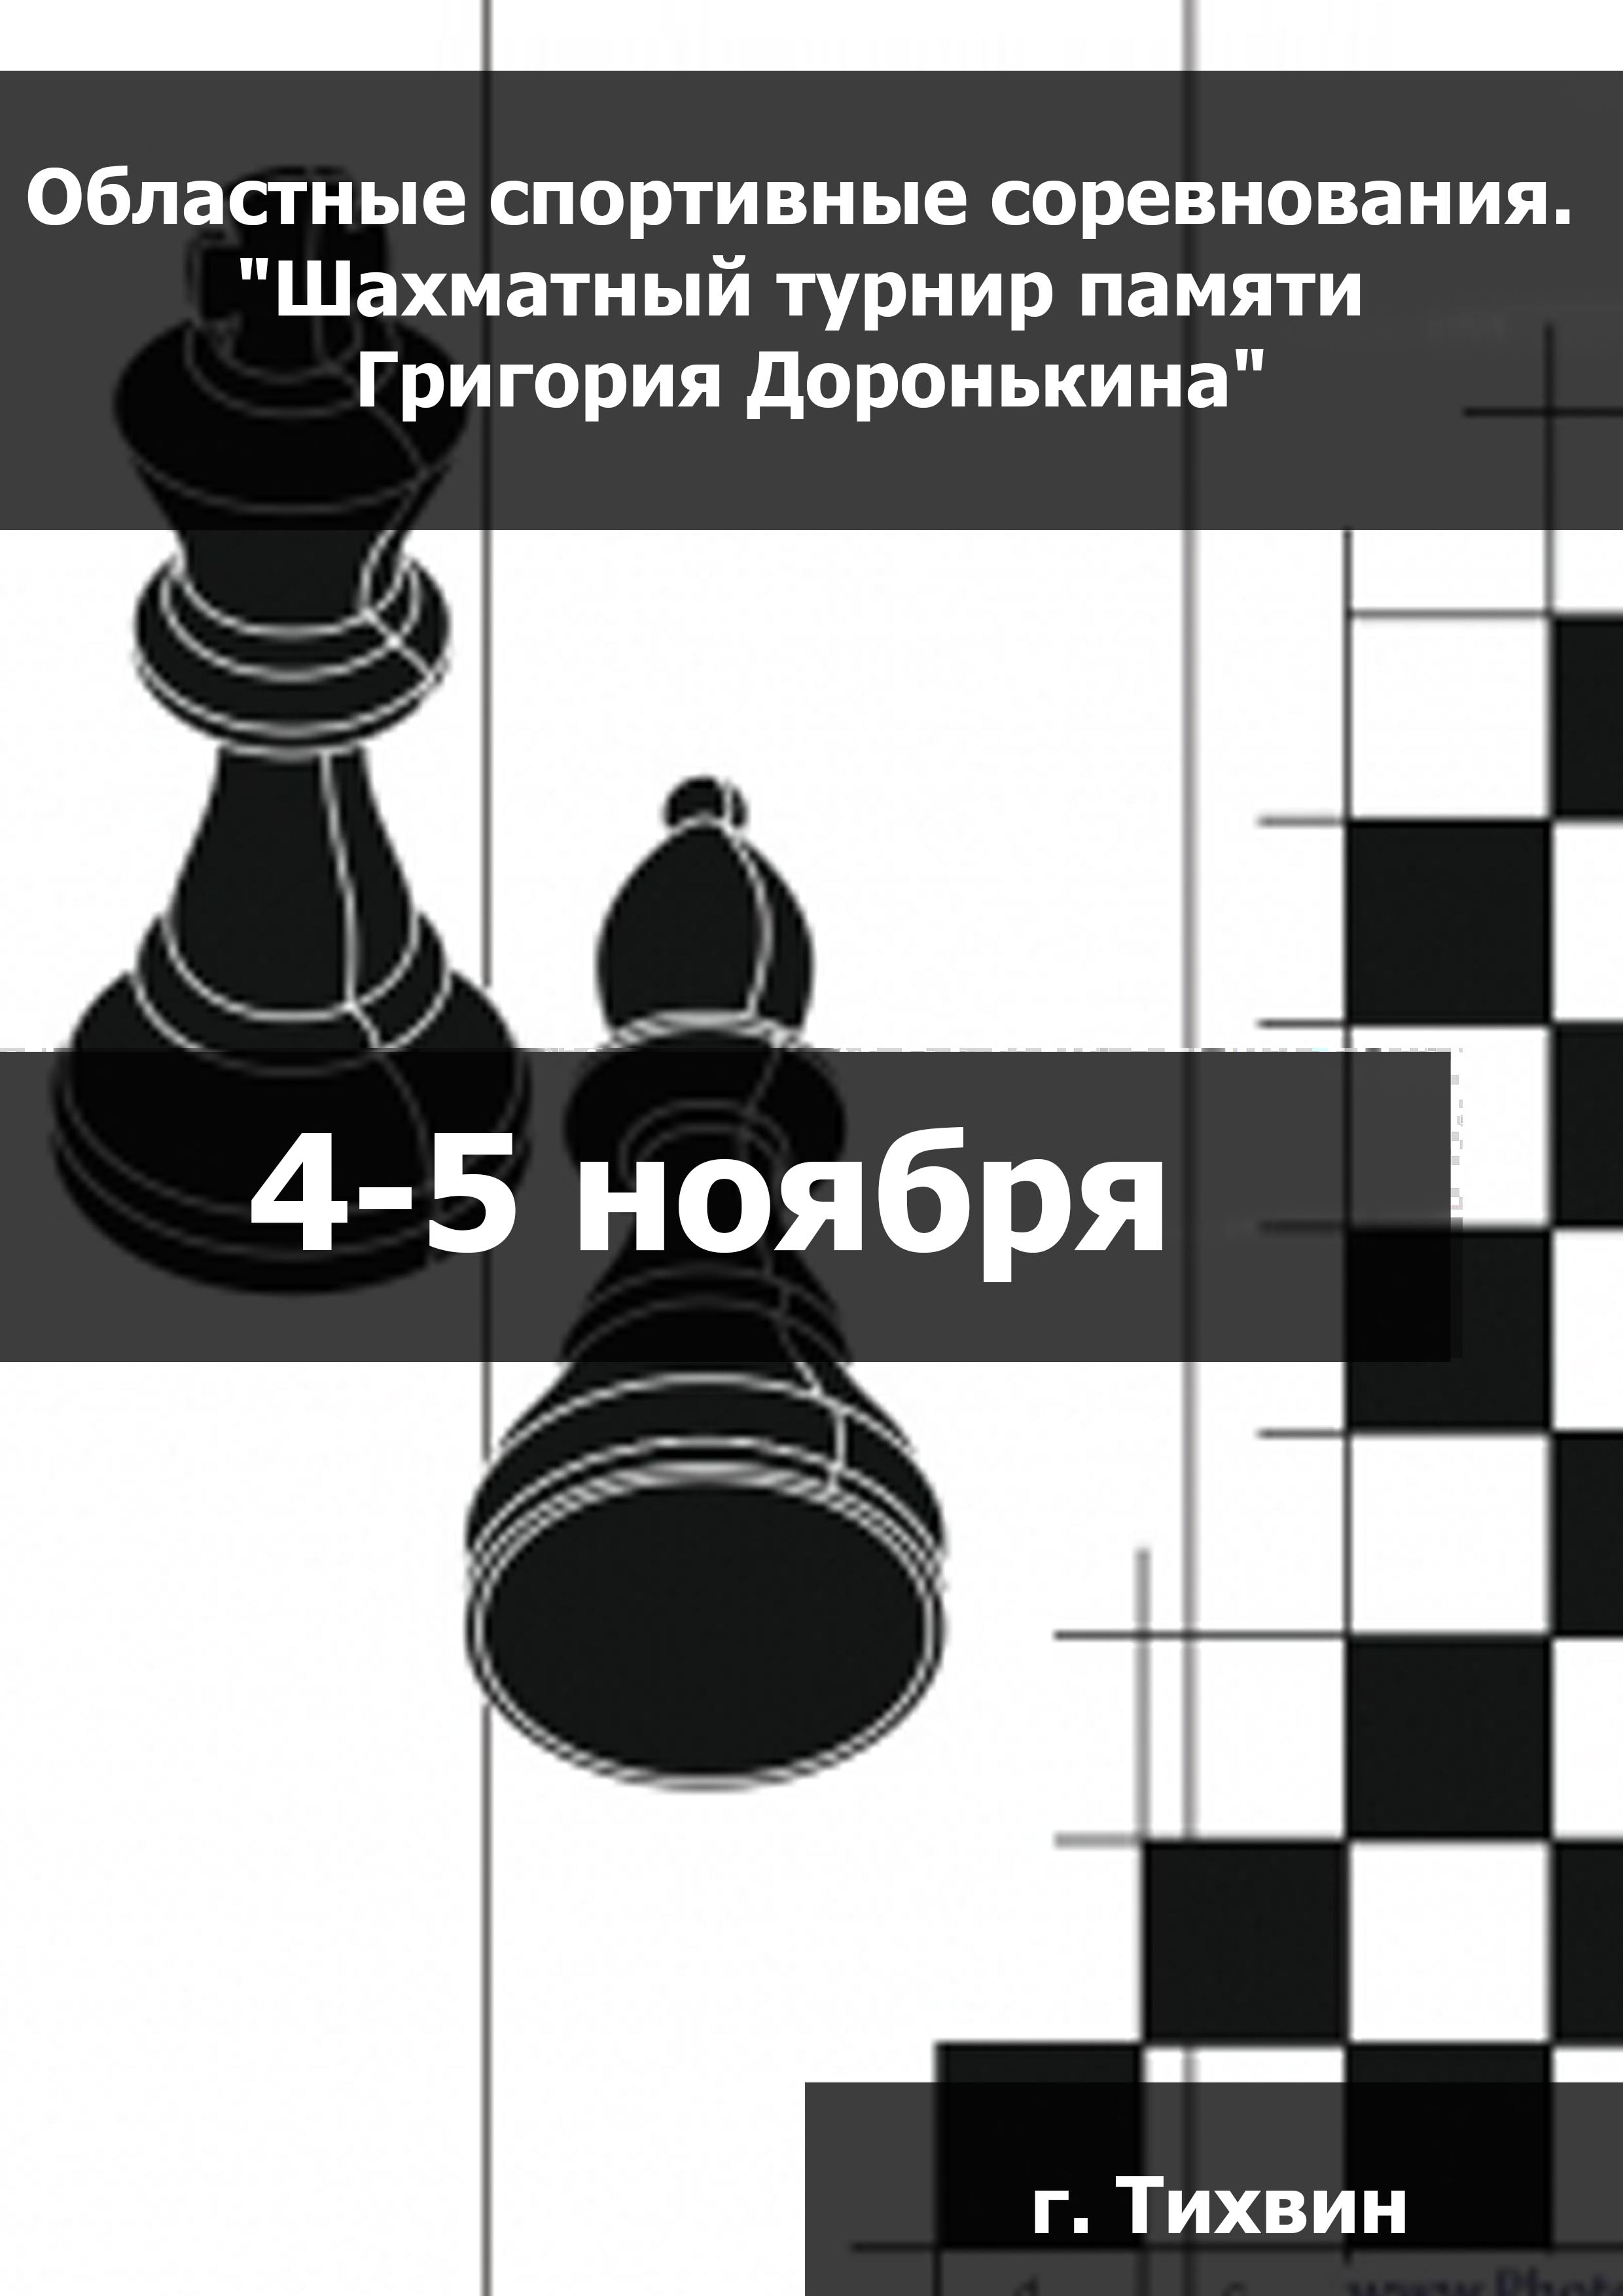 Областные спортивные соревнования. "Шахматный турнир памяти Григория Доронькина" 4  ເດືອນພະຈິກ
 2023  ປີ
 